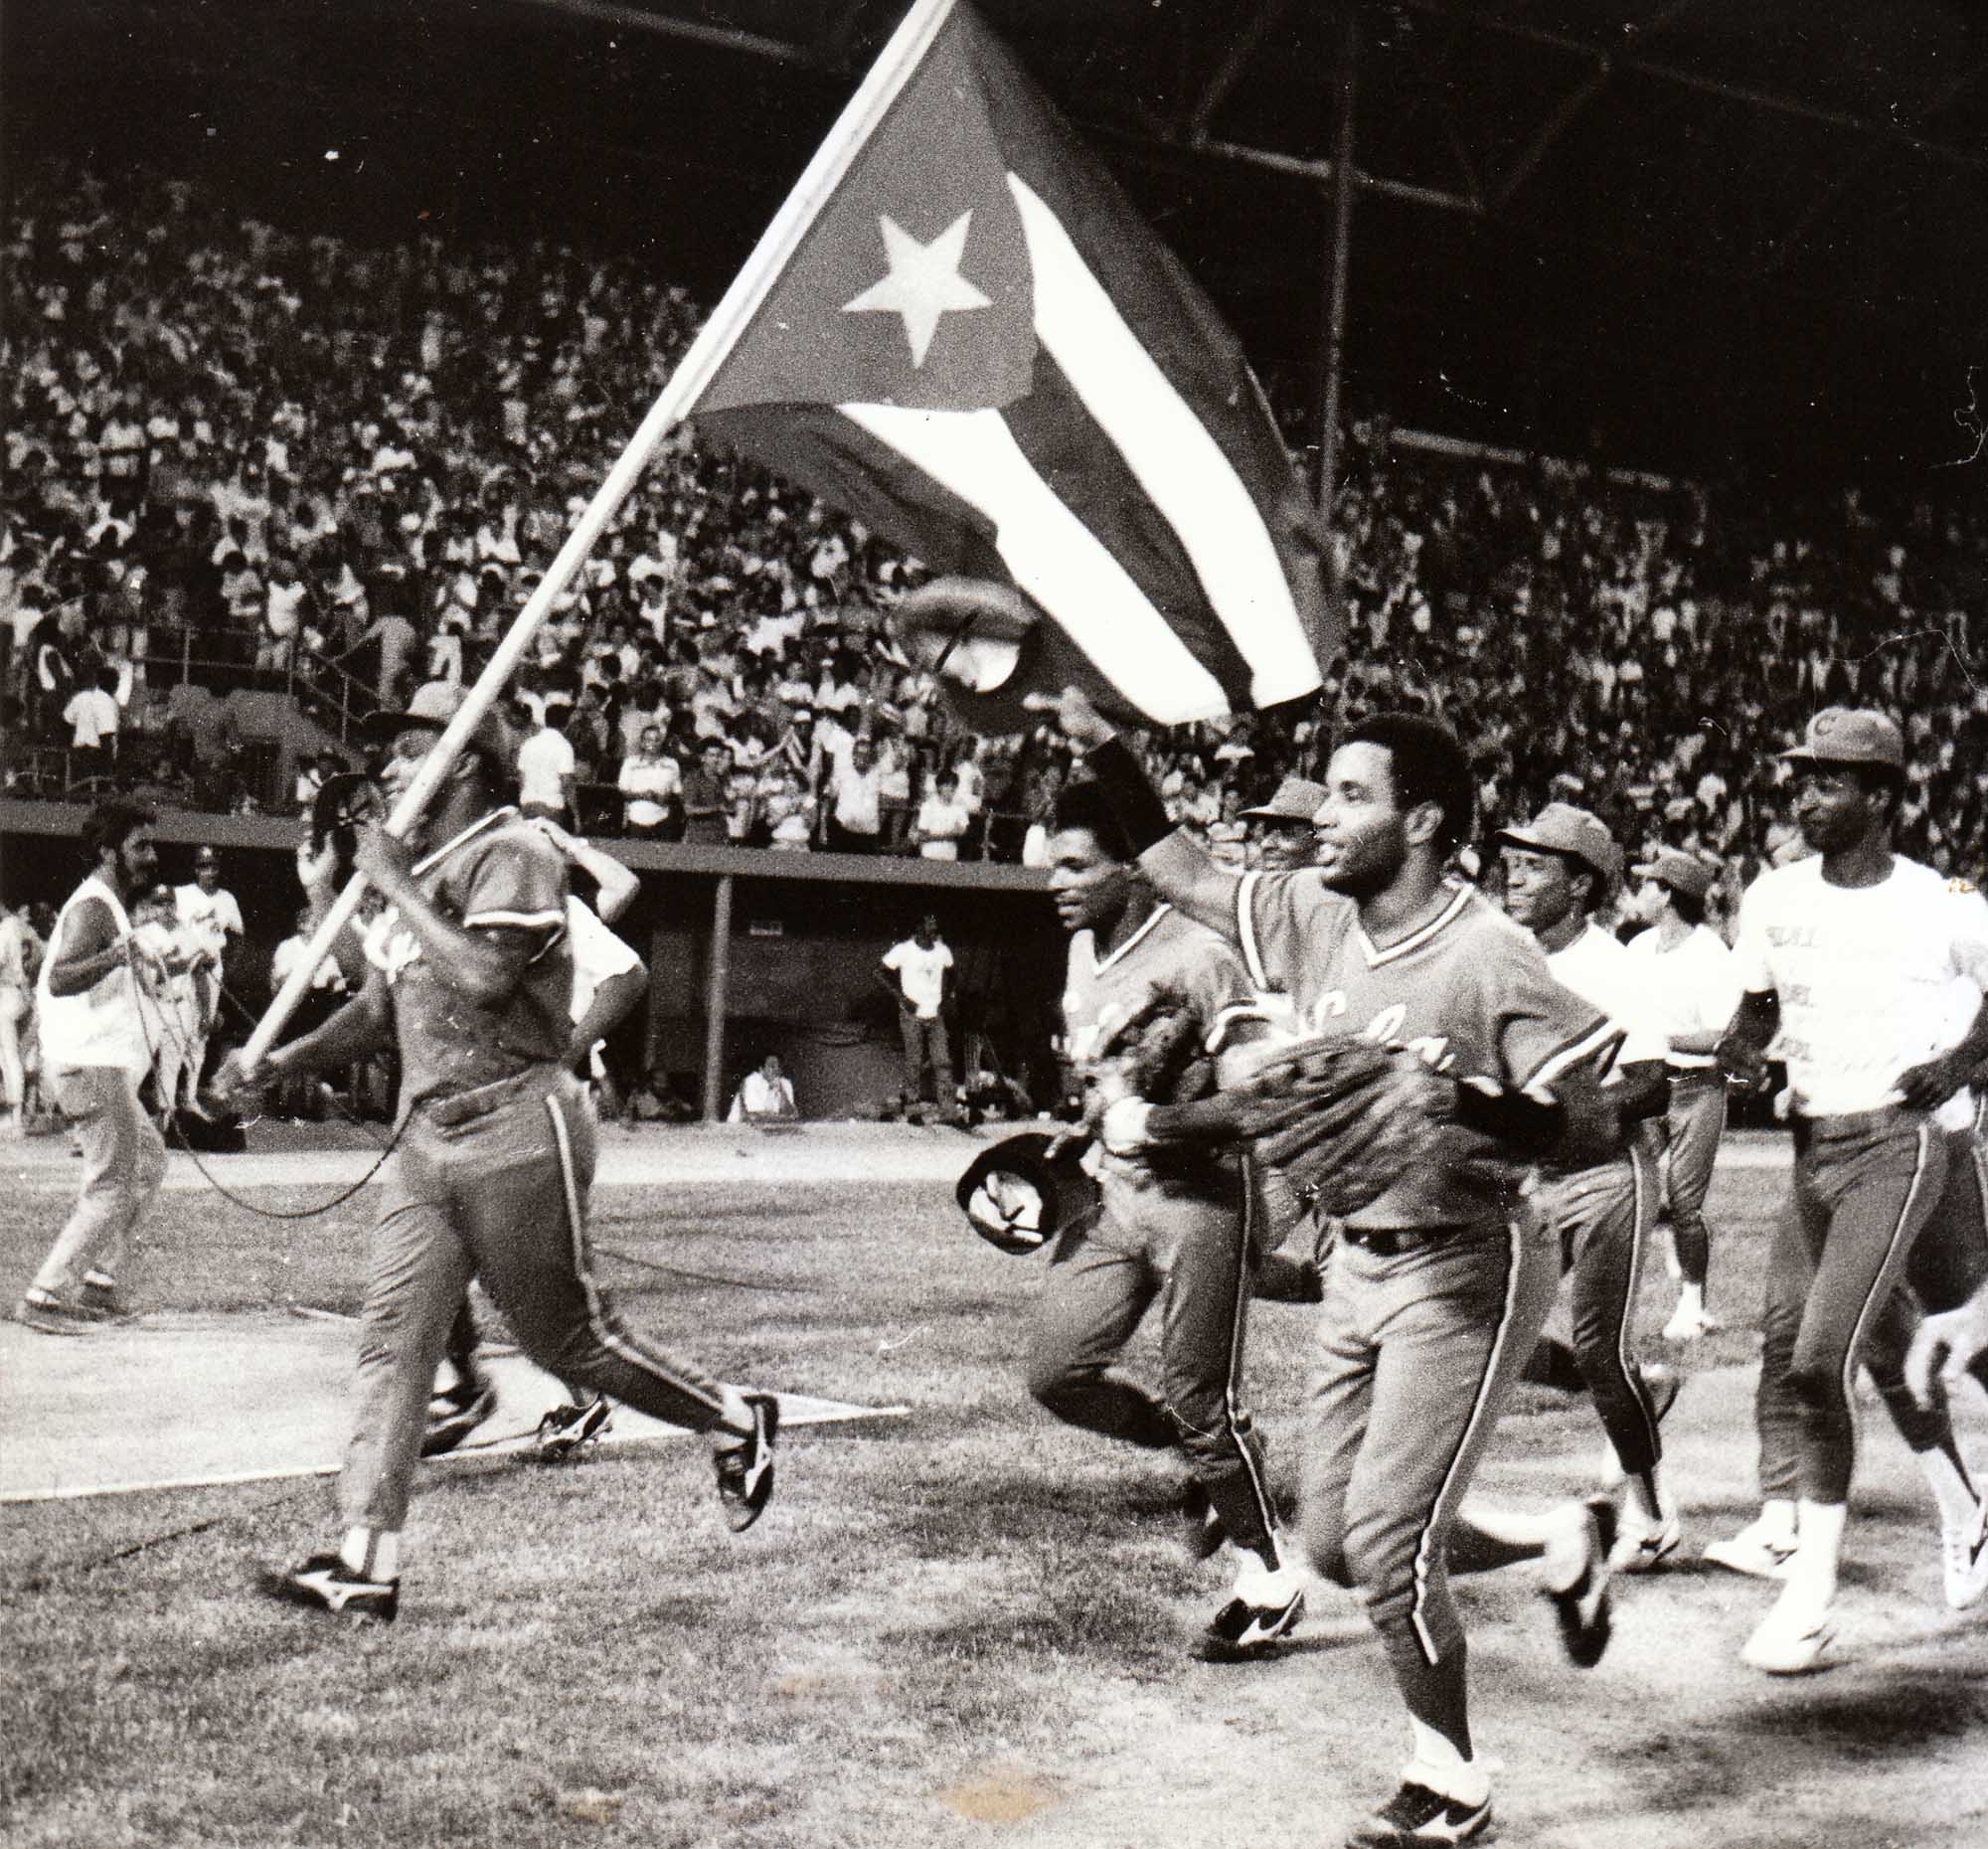 Los peloteros cubanos celebran el triunfo en los Juegos Panamericanos de La Habana 91'. Foto: Trabajadores / Archivo.